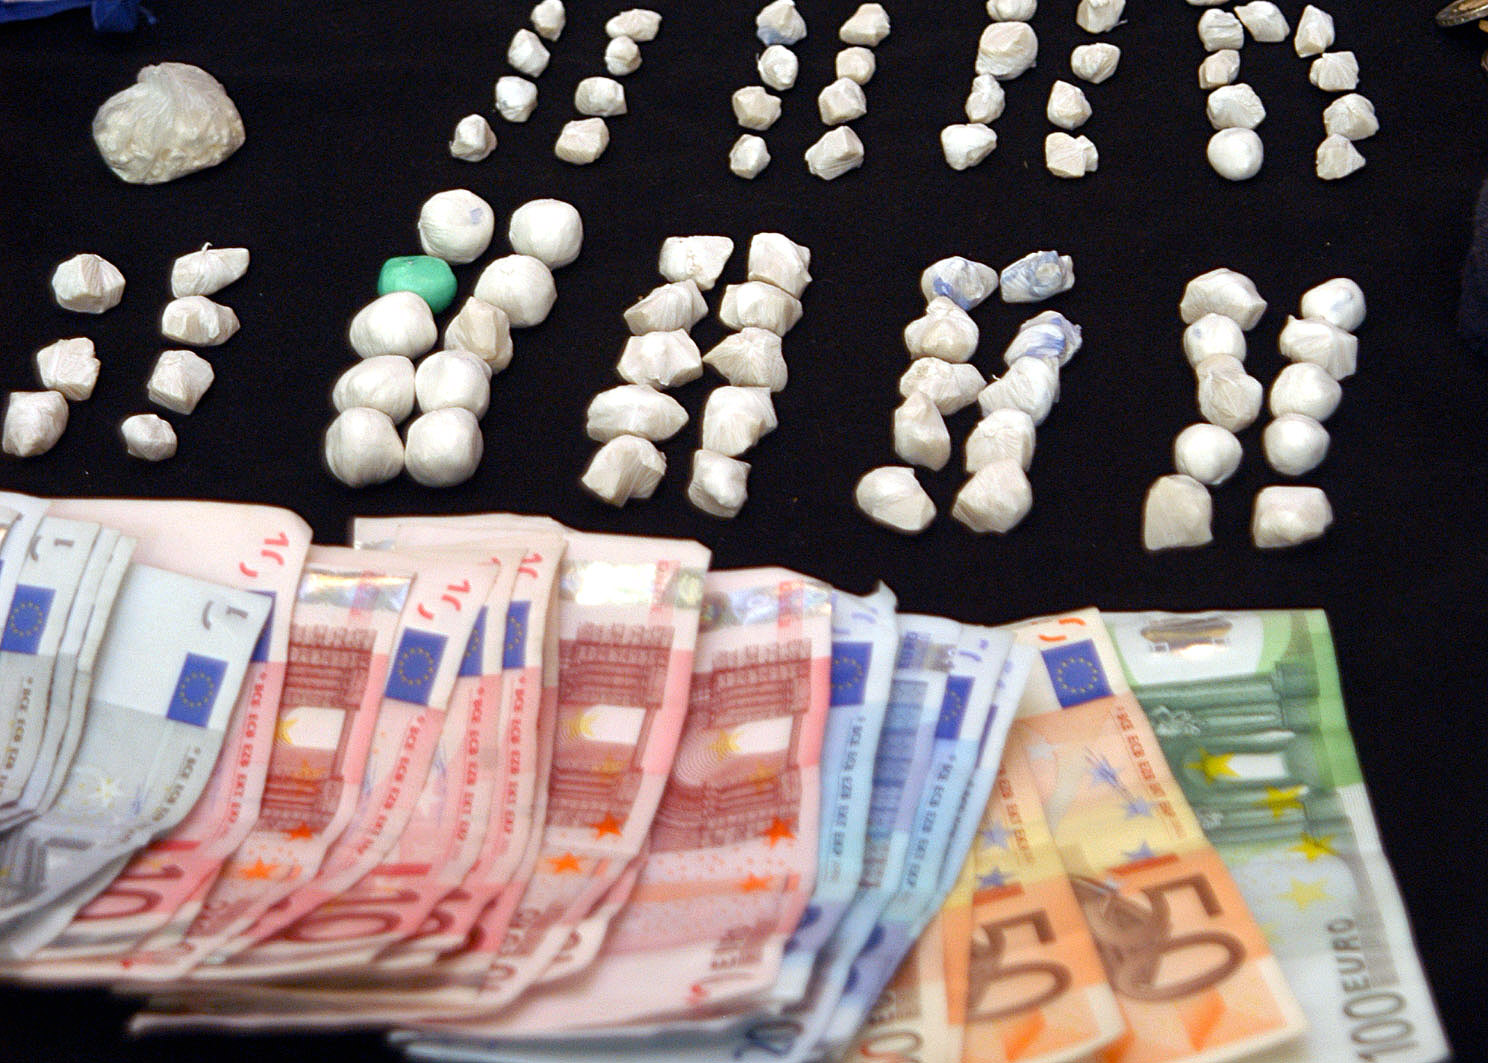 Dealer in Hamburg gefasst – Polizei stellt mehr als 140.000 Euro und Drogen sicher